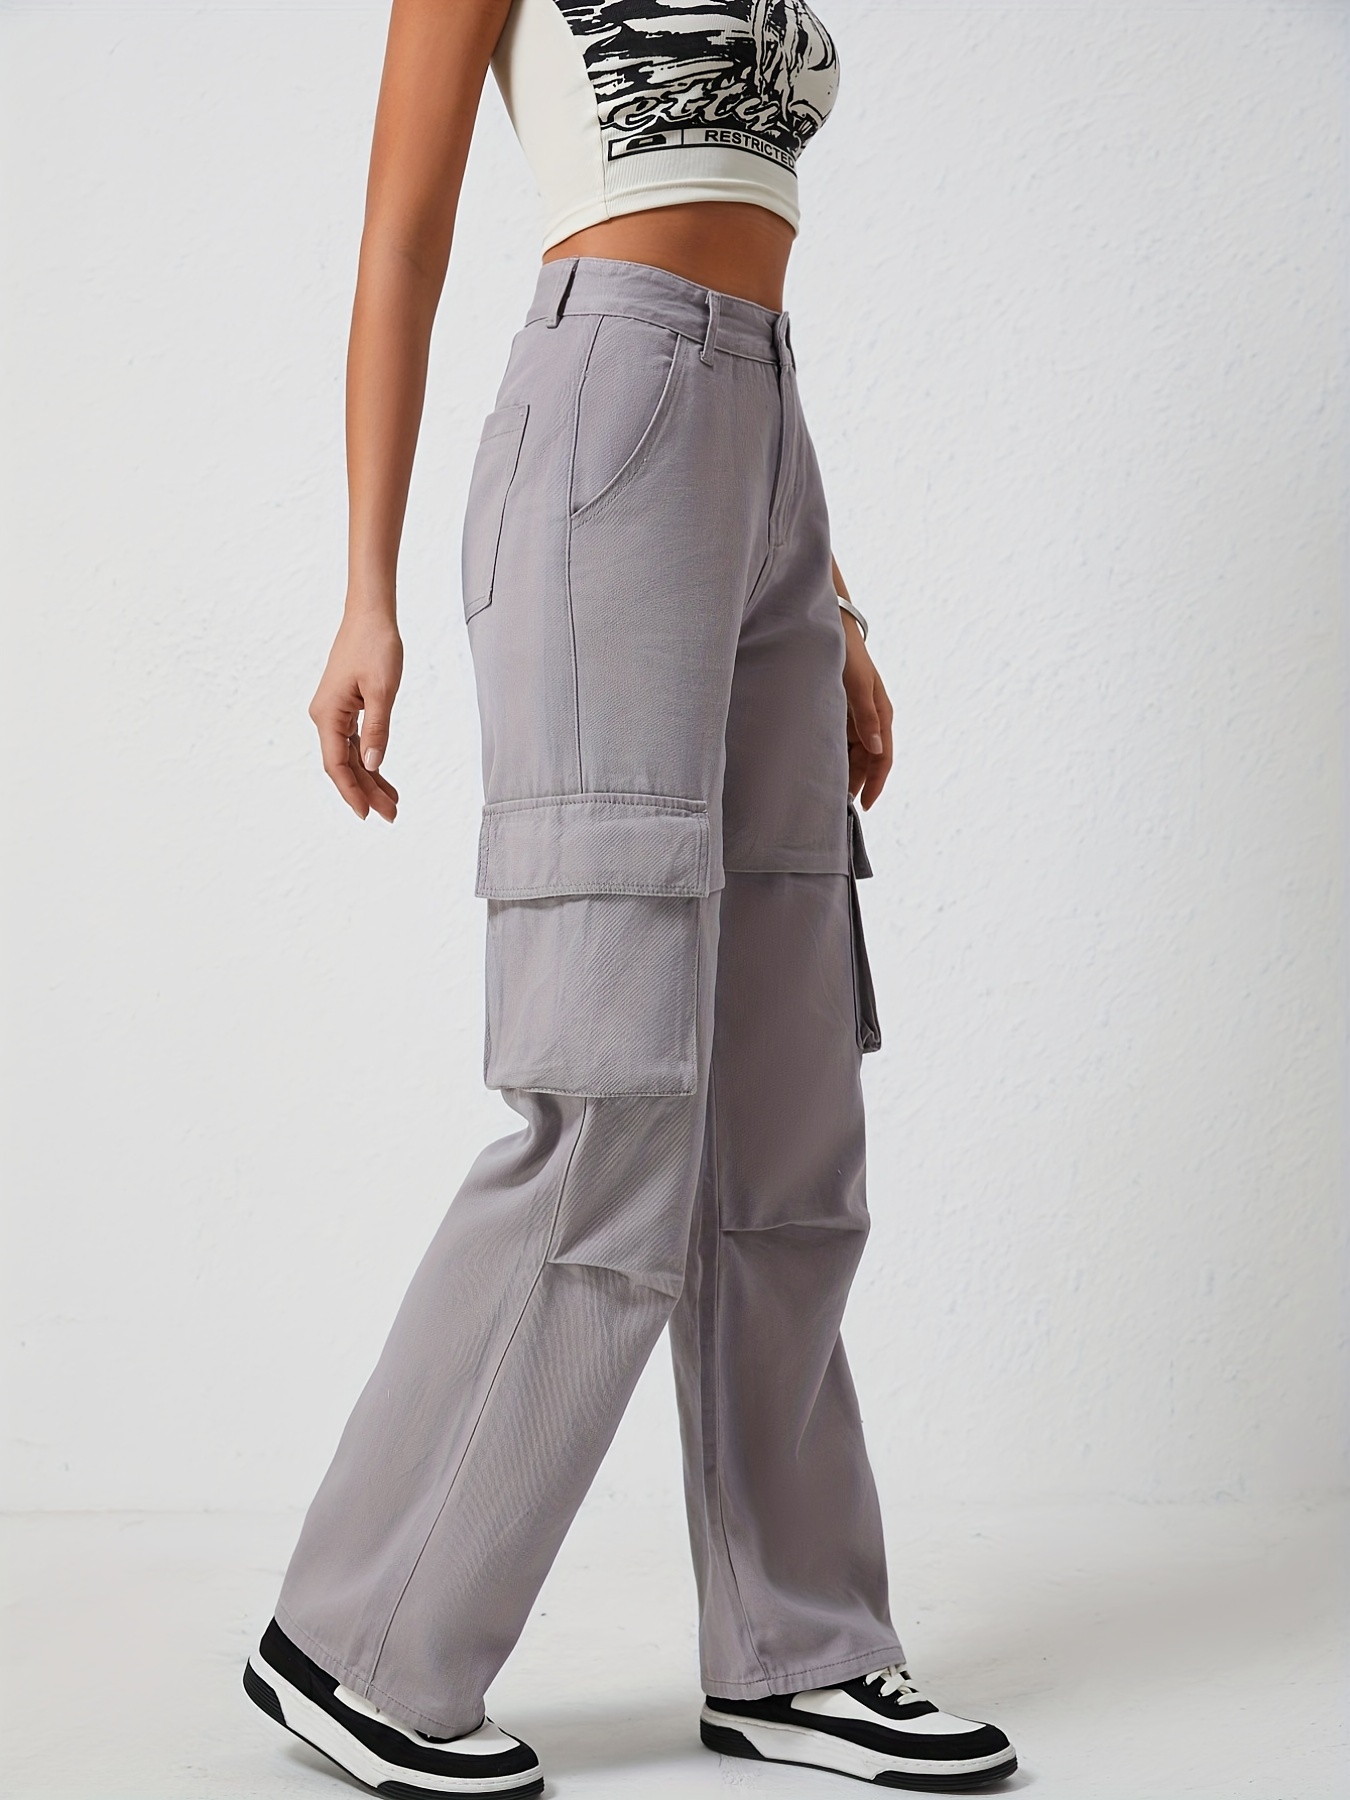 Cargo Pants Women Womens Jeans Women's Trendy Casual Plain Color